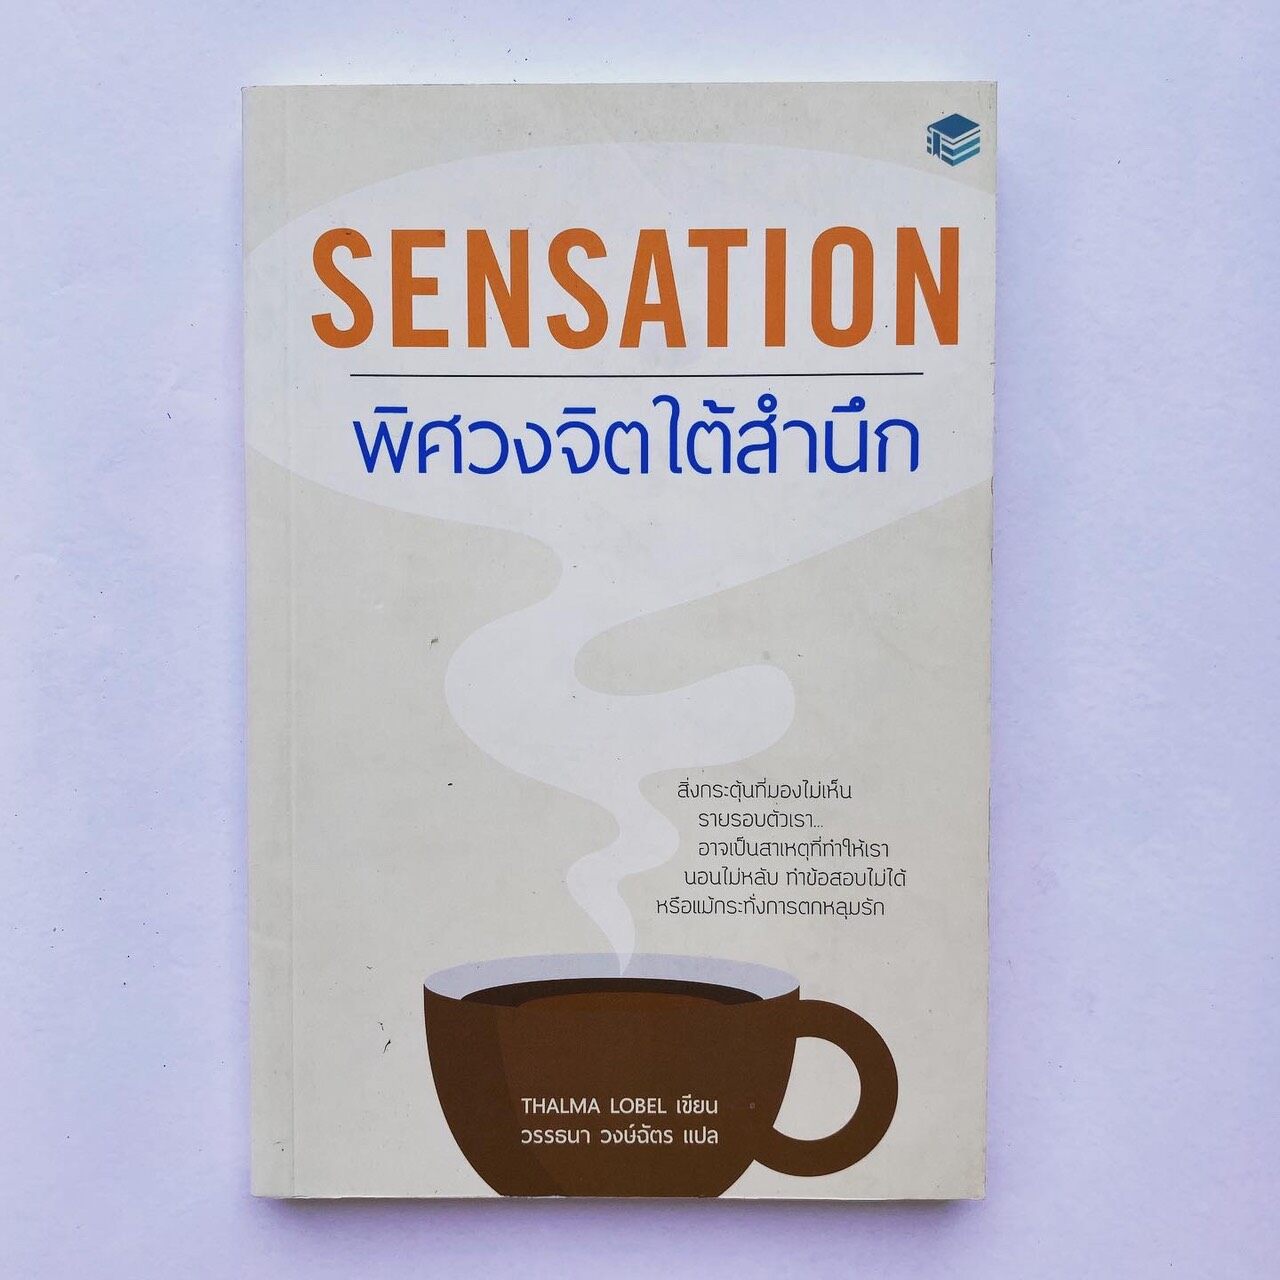 หนังสือ Sensation พิศวงจิตใต้สำนึก - Thalma Lobel เขียน - วรรธนา วงษ์ฉัตร แปล - (ลด 35% จากราคาเต็ม)